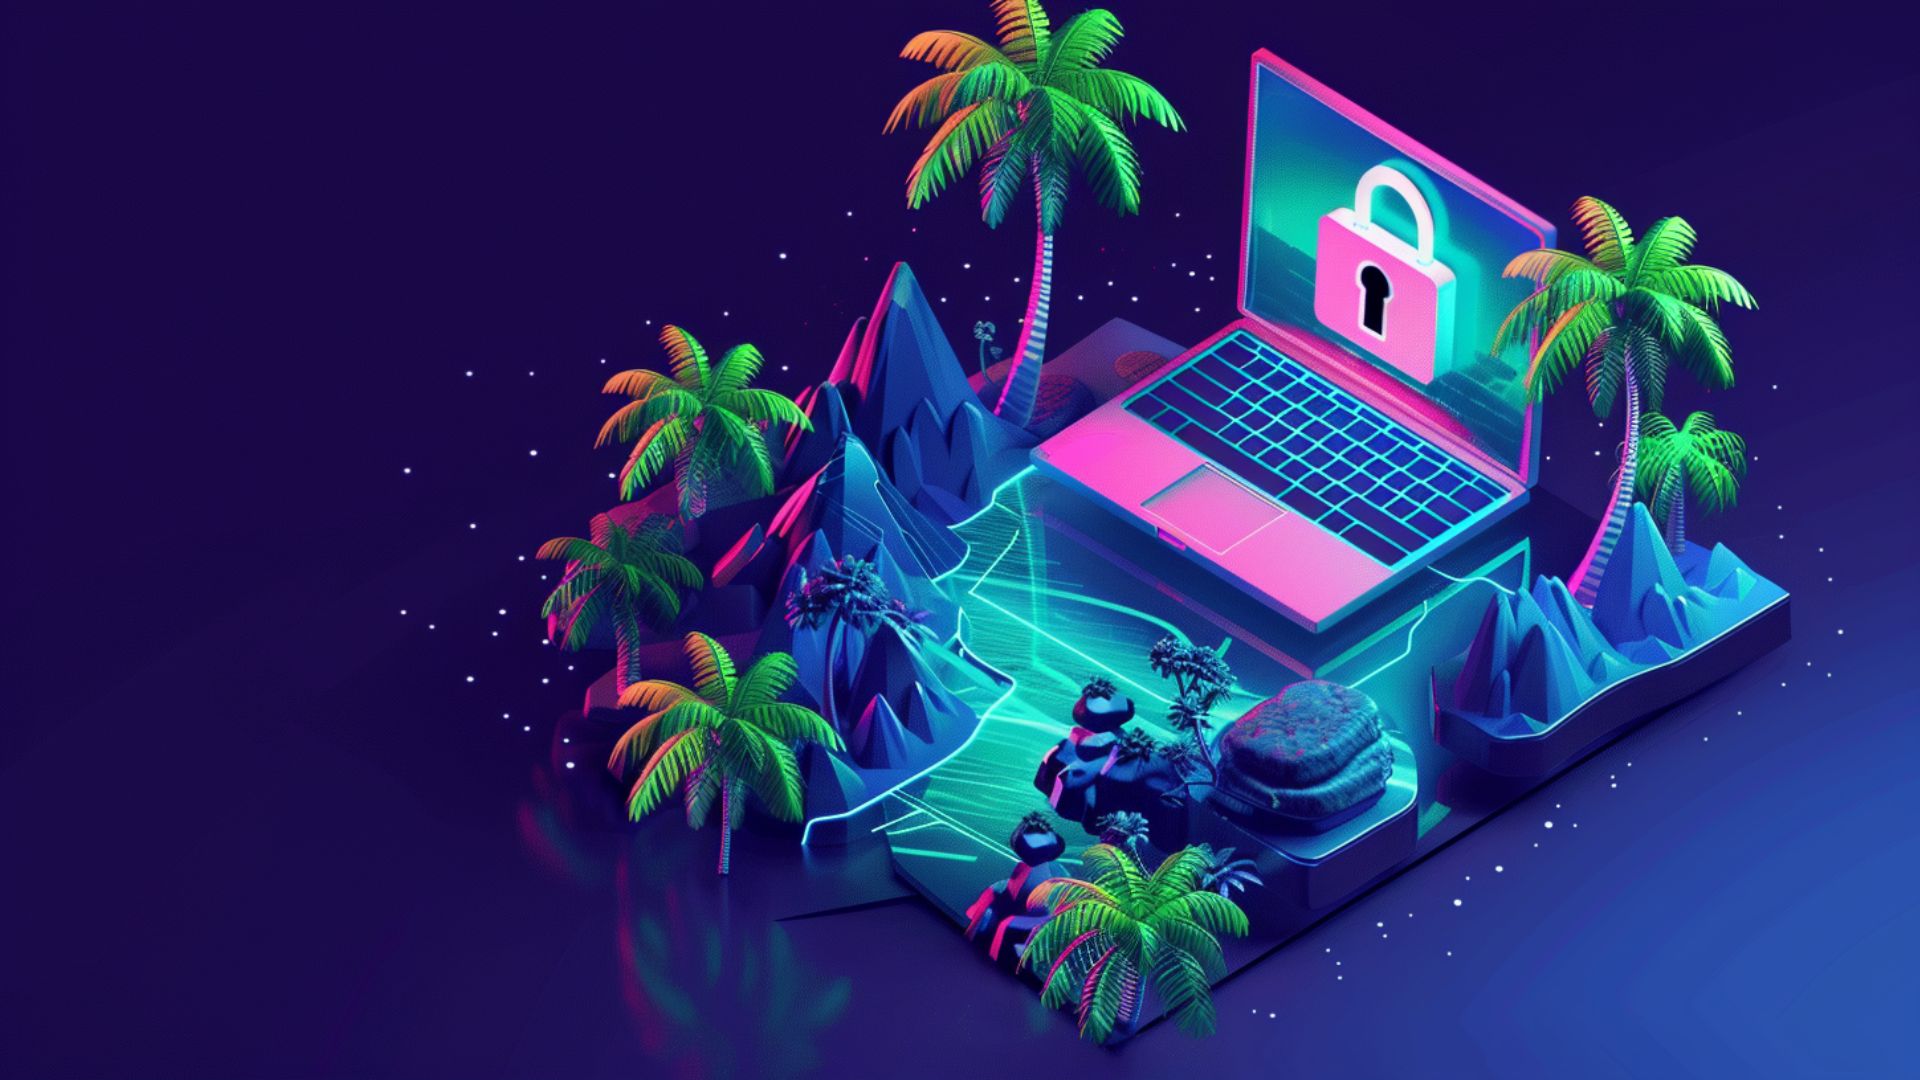 En rosa PC med bilde av en hengelås på skjermen, midt på en liten øy med palmetrær. IT-sikkerhet.